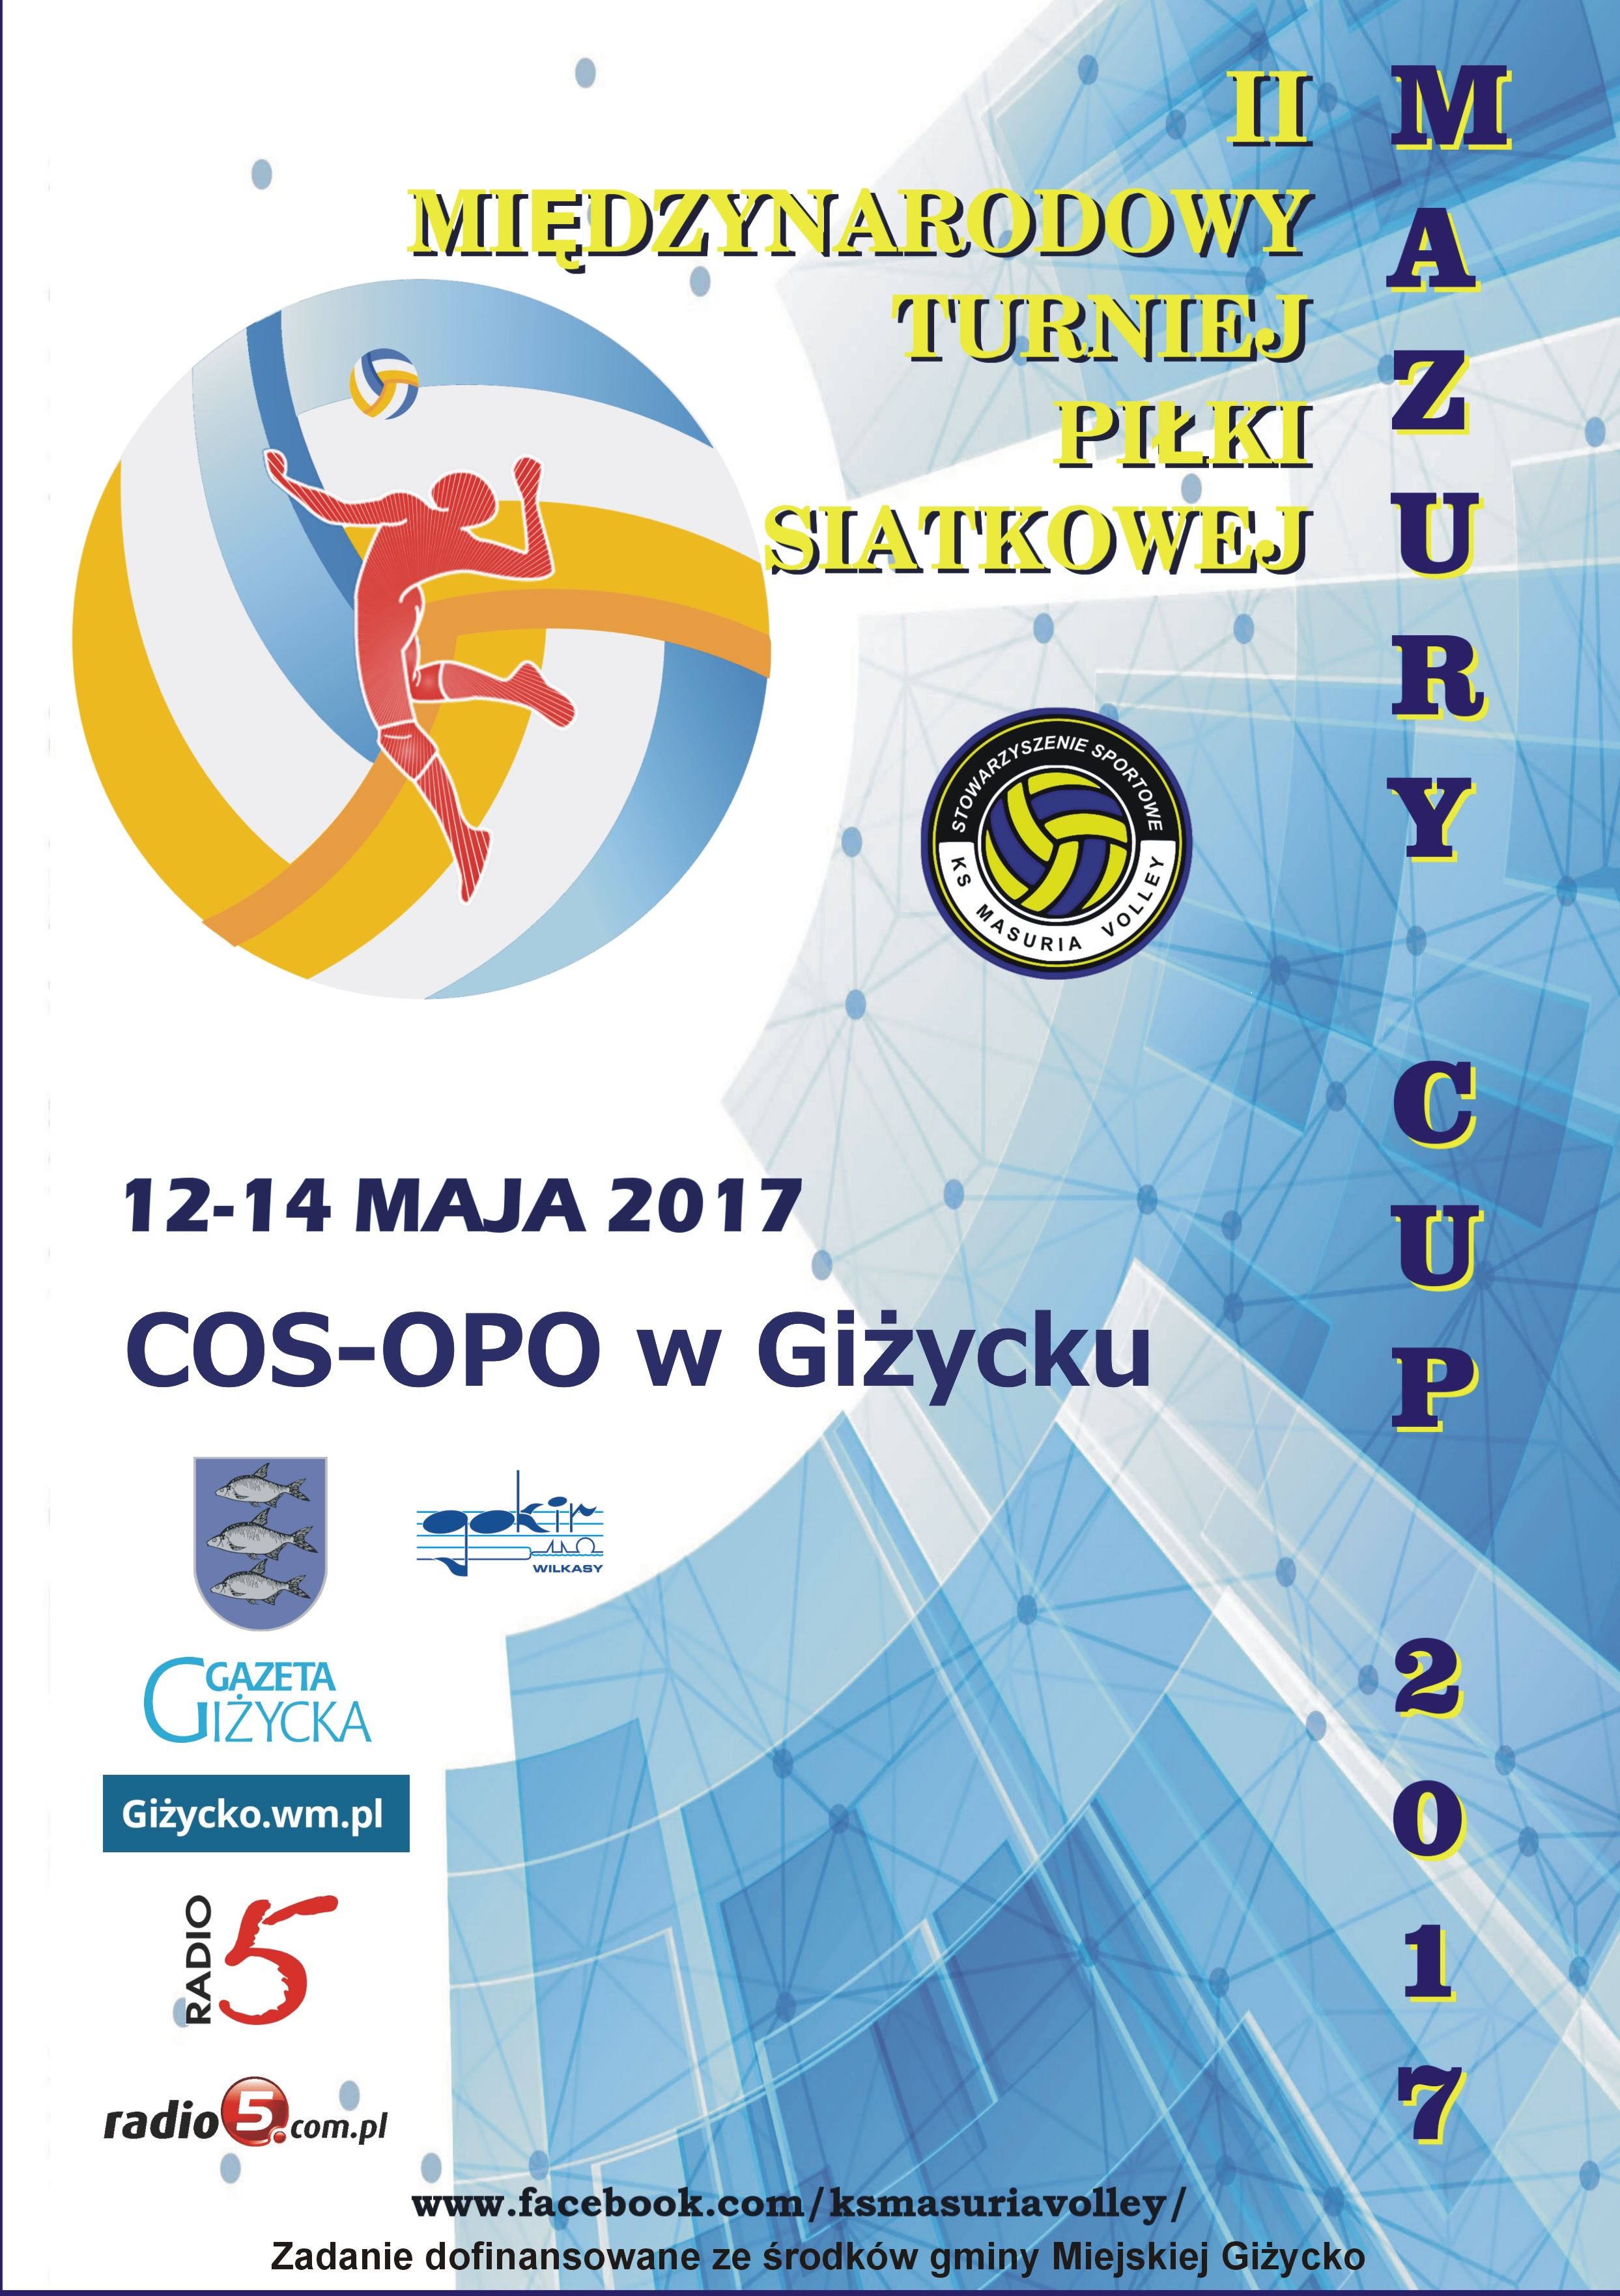 II Międzynarodowy Turniej Piłki Siatkowej "MAZURY CUP 2017"